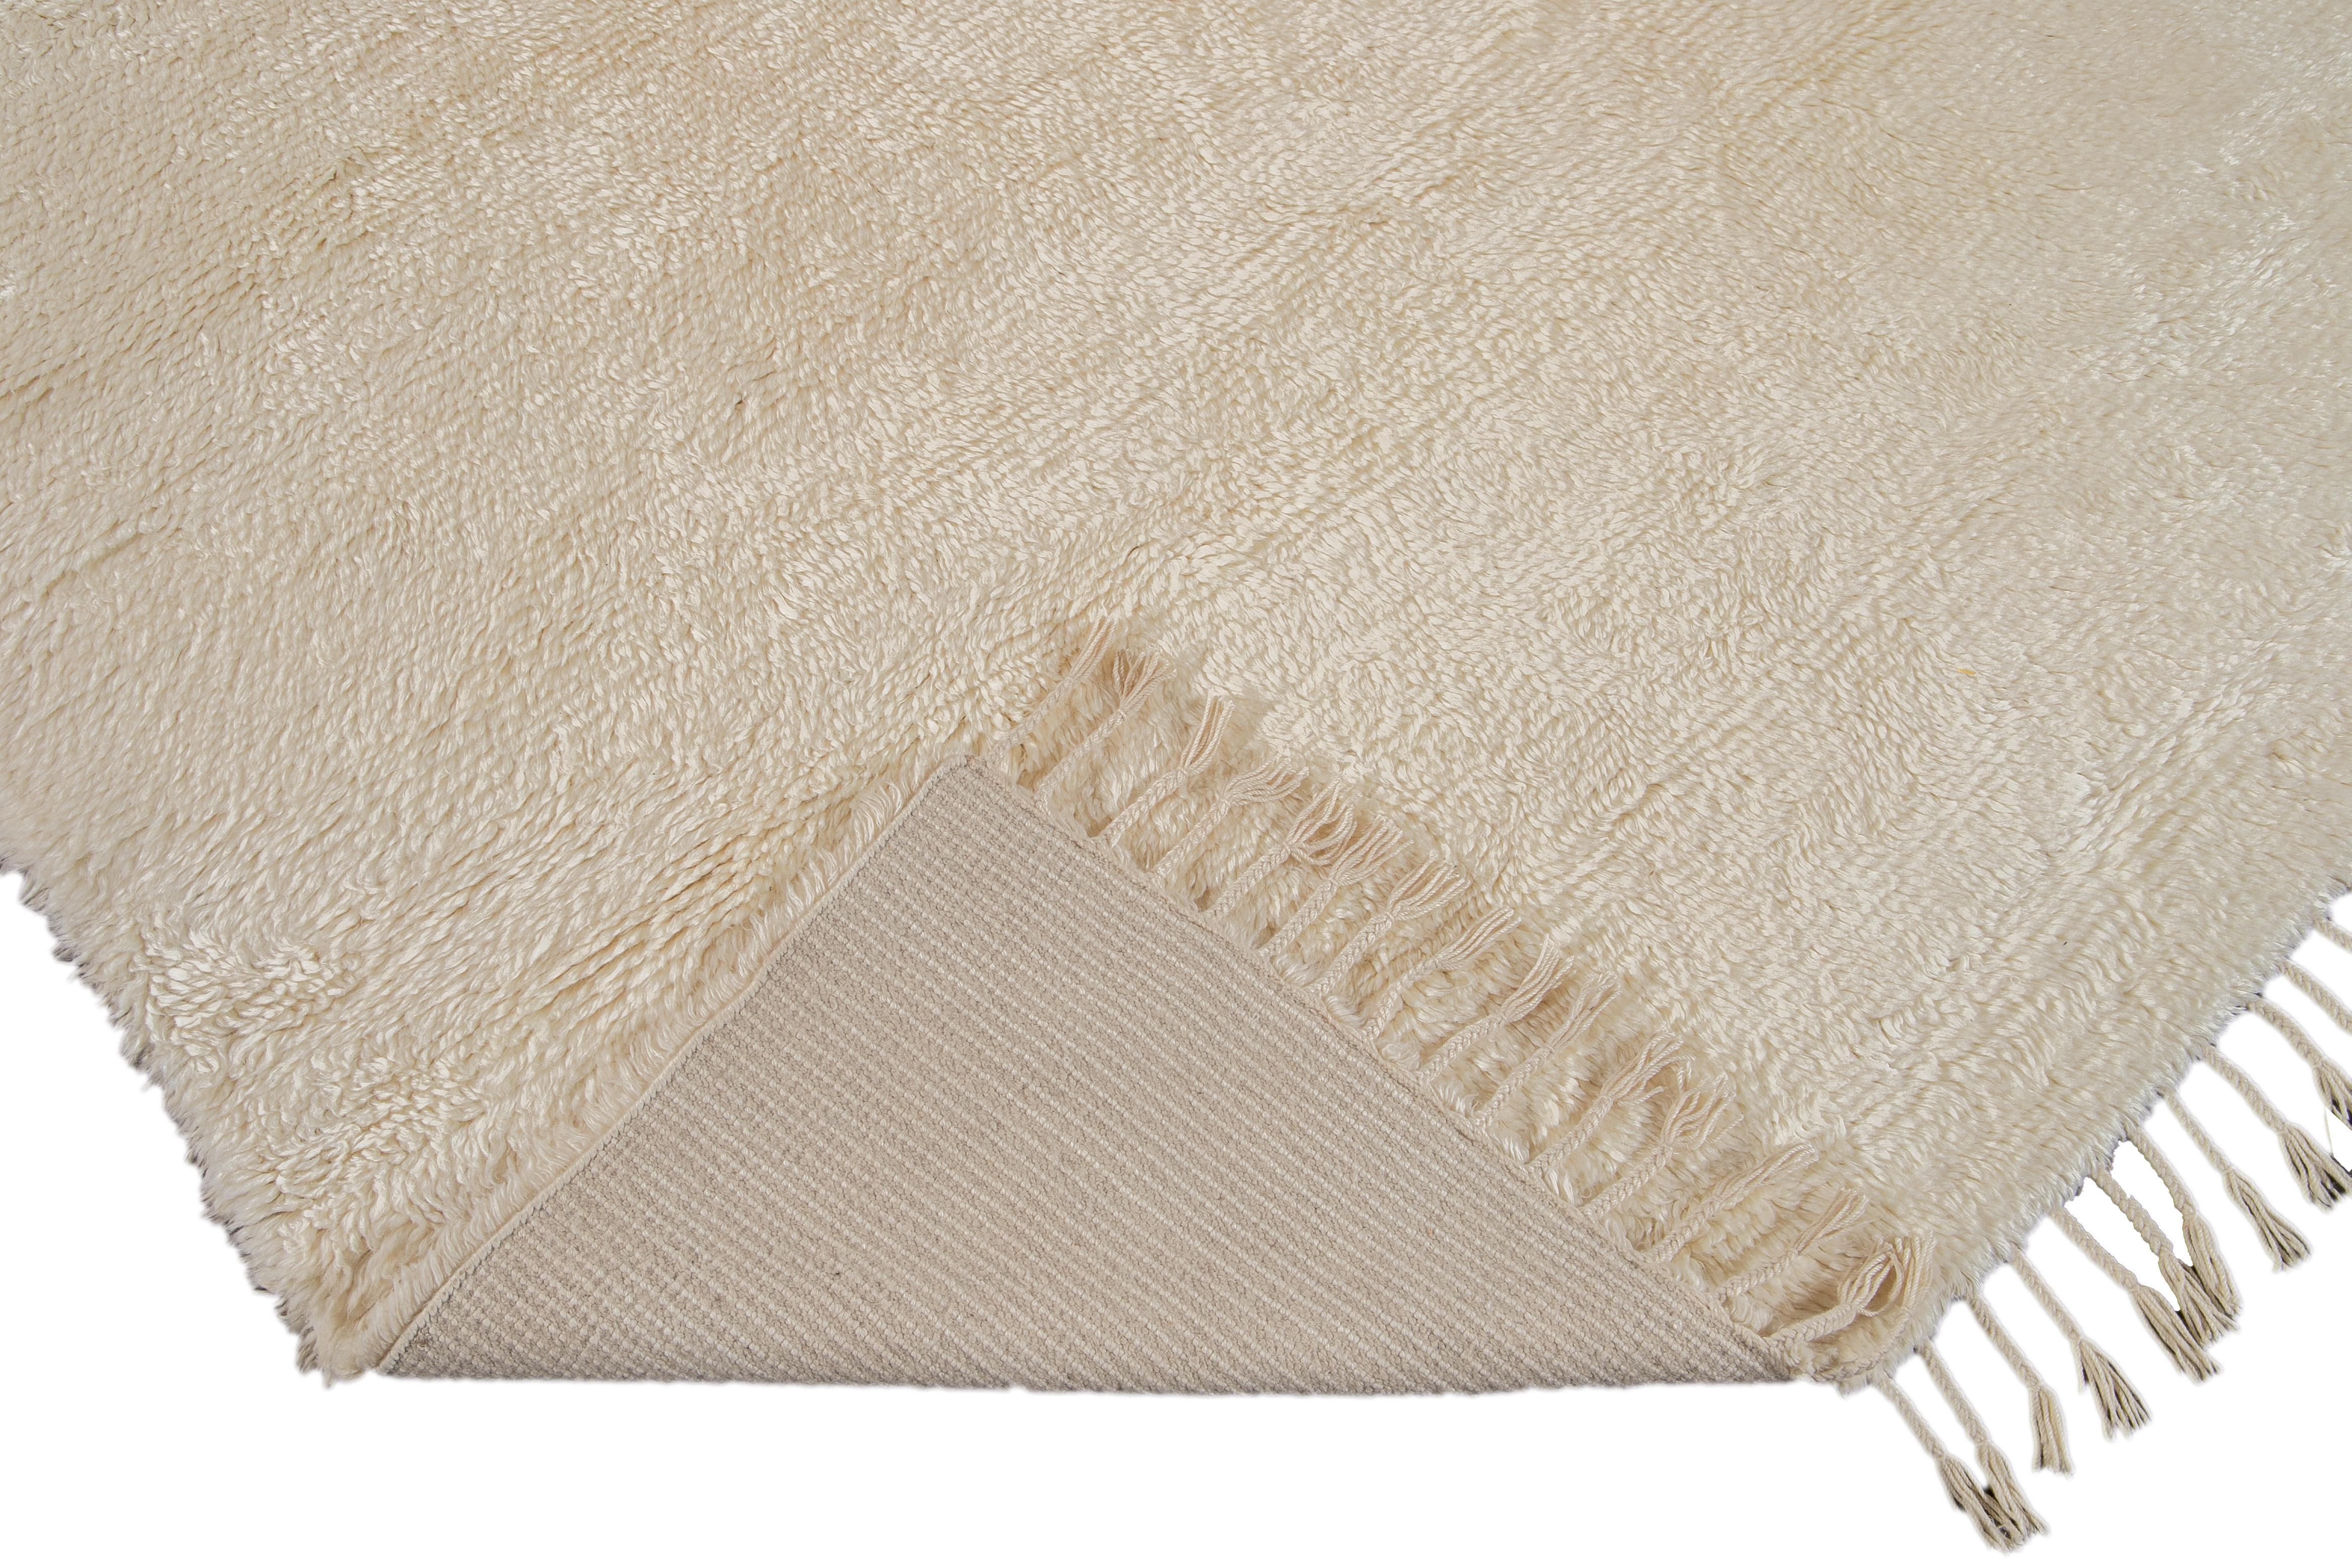 Schöner handgeknüpfter Wollteppich im zeitgenössischen marokkanischen Stil. Dieser Shag-Teppich hat das Feld und die Fransen von Ivory in einem herrlichen Shag-Design.

Dieser Teppich misst 9' x 12'.

 